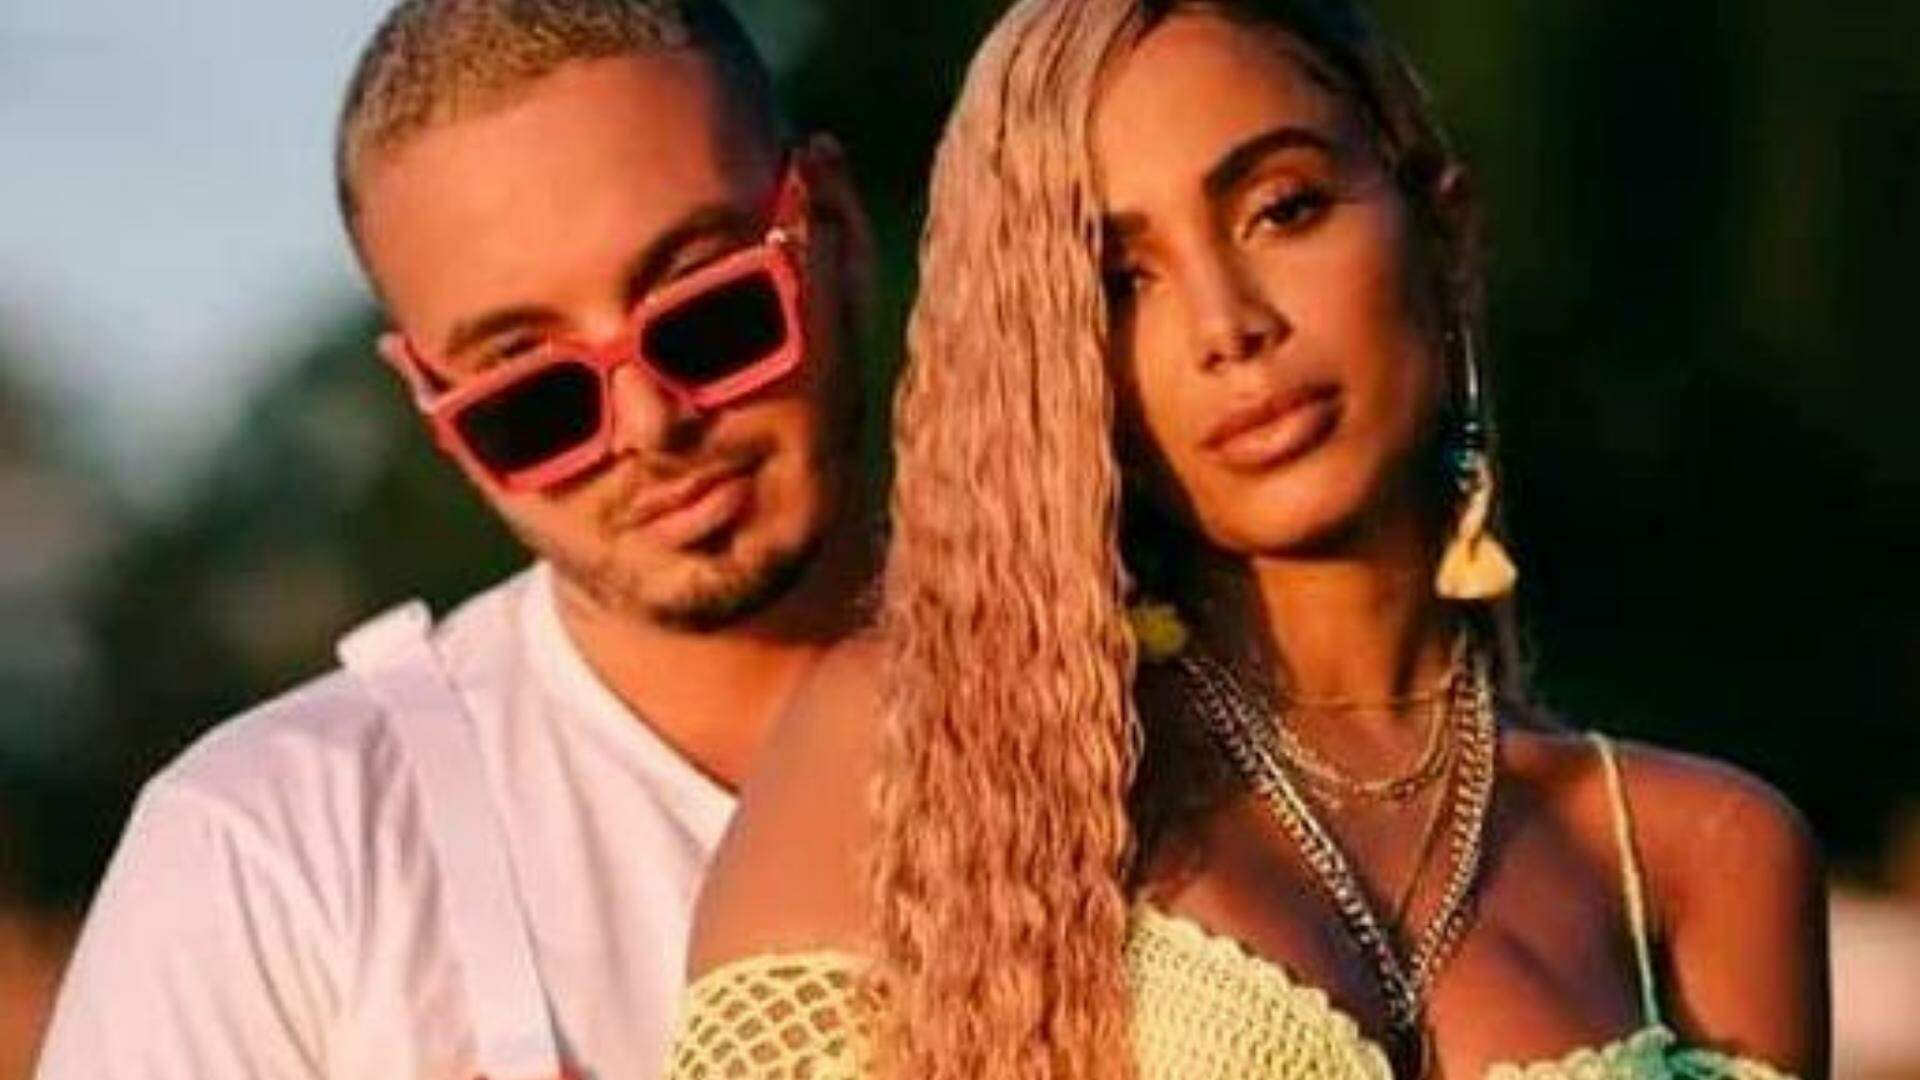 Durante turnê no Brasil, J Balvin desabafa sobre relação com Anitta: “Nunca vou dizer um não” - Metropolitana FM